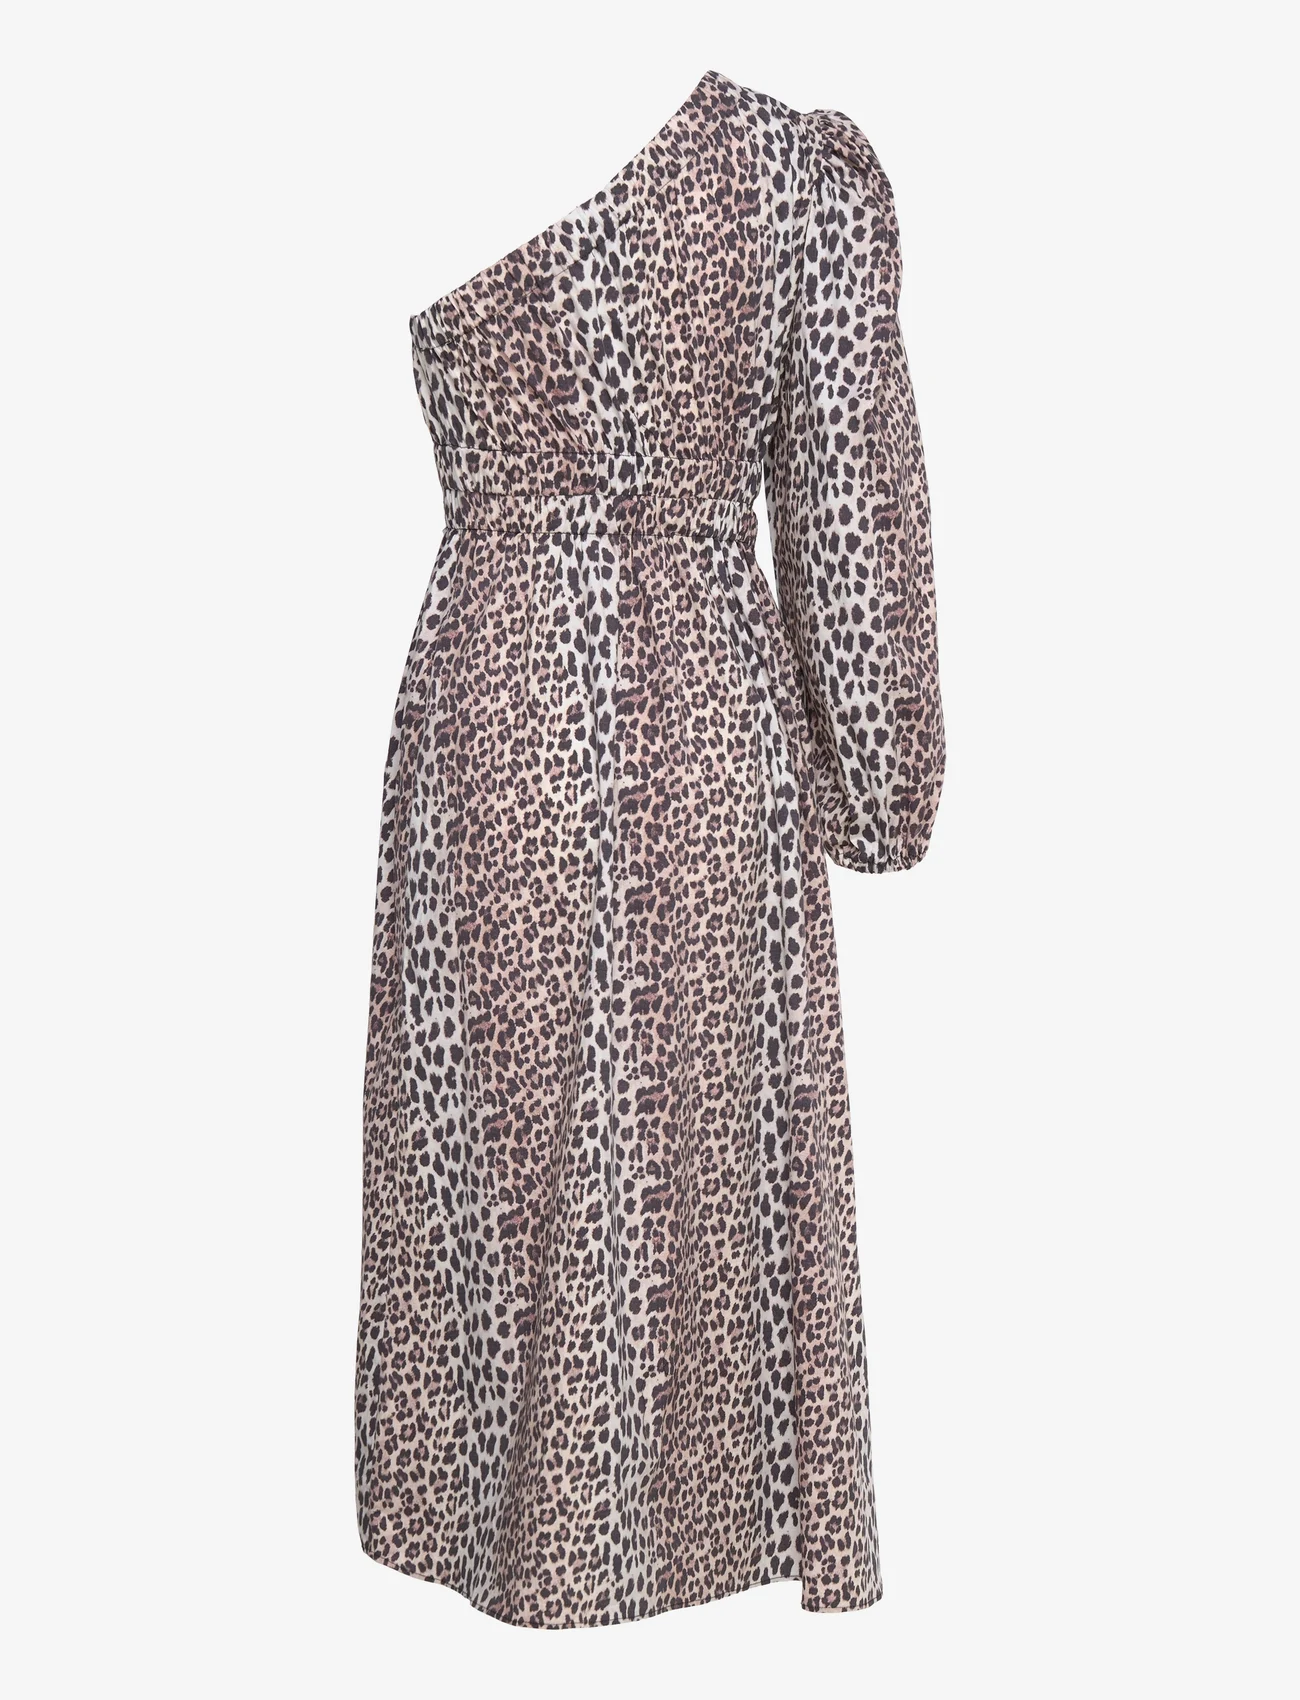 Notes du Nord - Dassy One Shoulder Dress - festkläder till outletpriser - leopard - 1